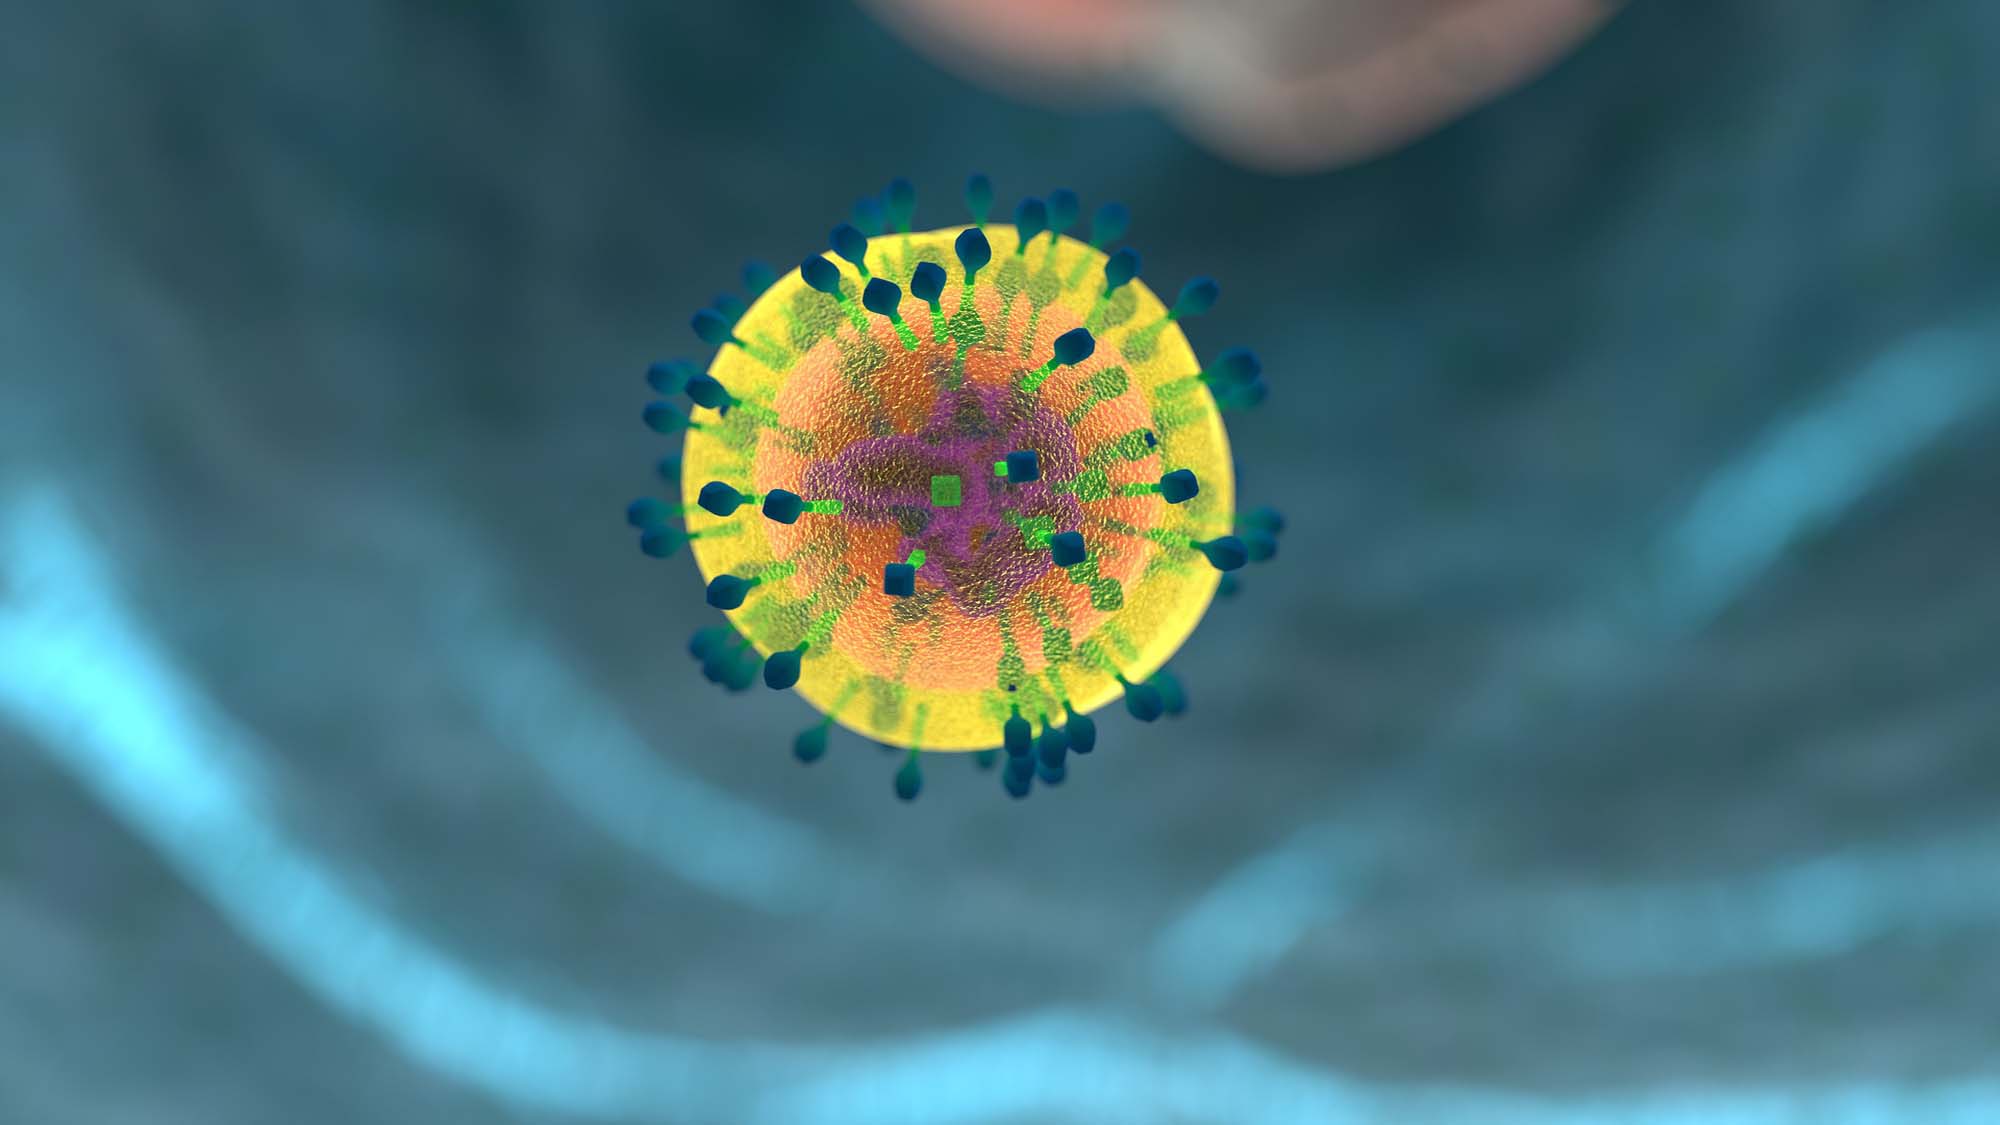 Investigadors descobreixen que NFAT5 ajuda a controlar els nivells d'interferons durant la resposta immunològica. | Imatge d'allinonemovie a Pixabay.